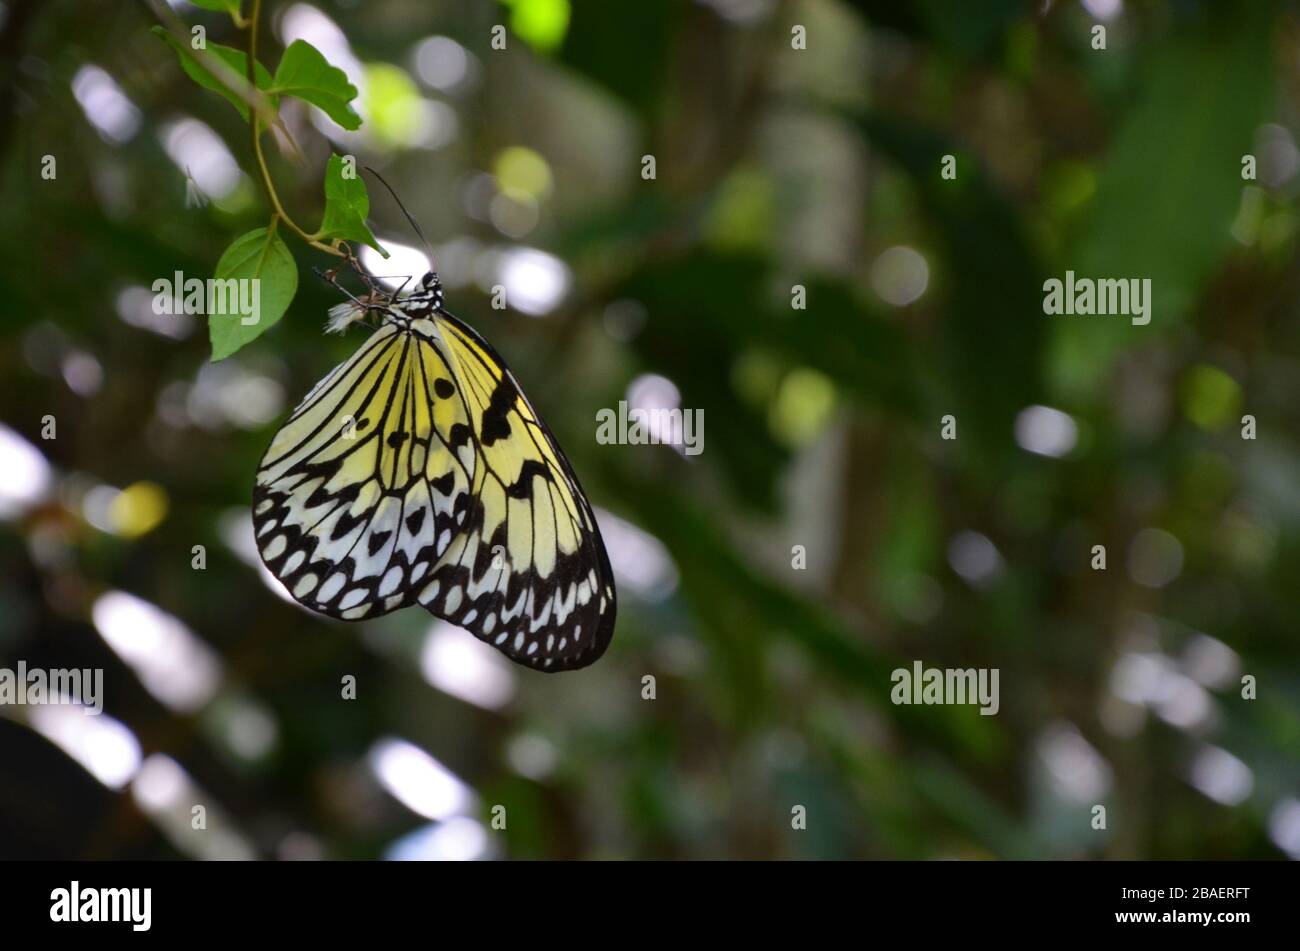 Farfalla con motivo giallo-bianco-nero seduta in un ramo Foto Stock